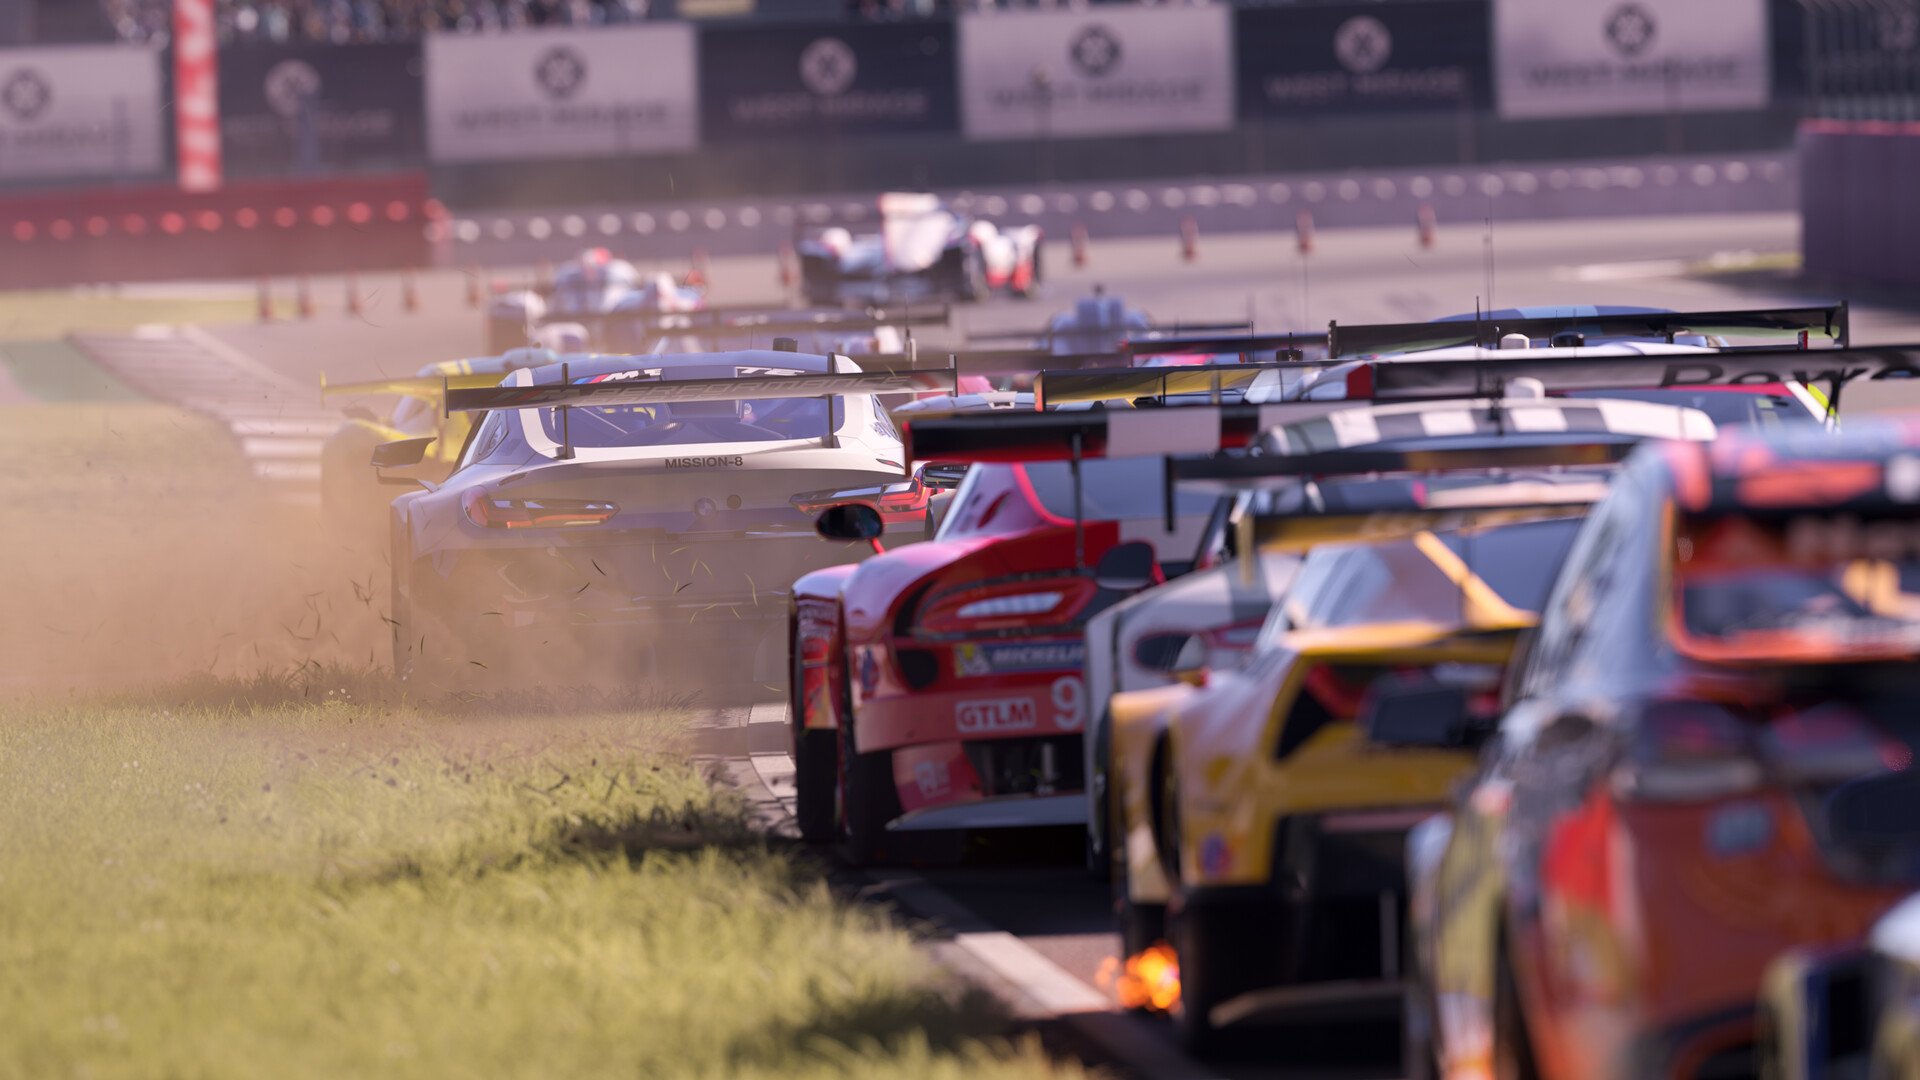 Forza Motorsport Release Date, Release Times & Preload Details On